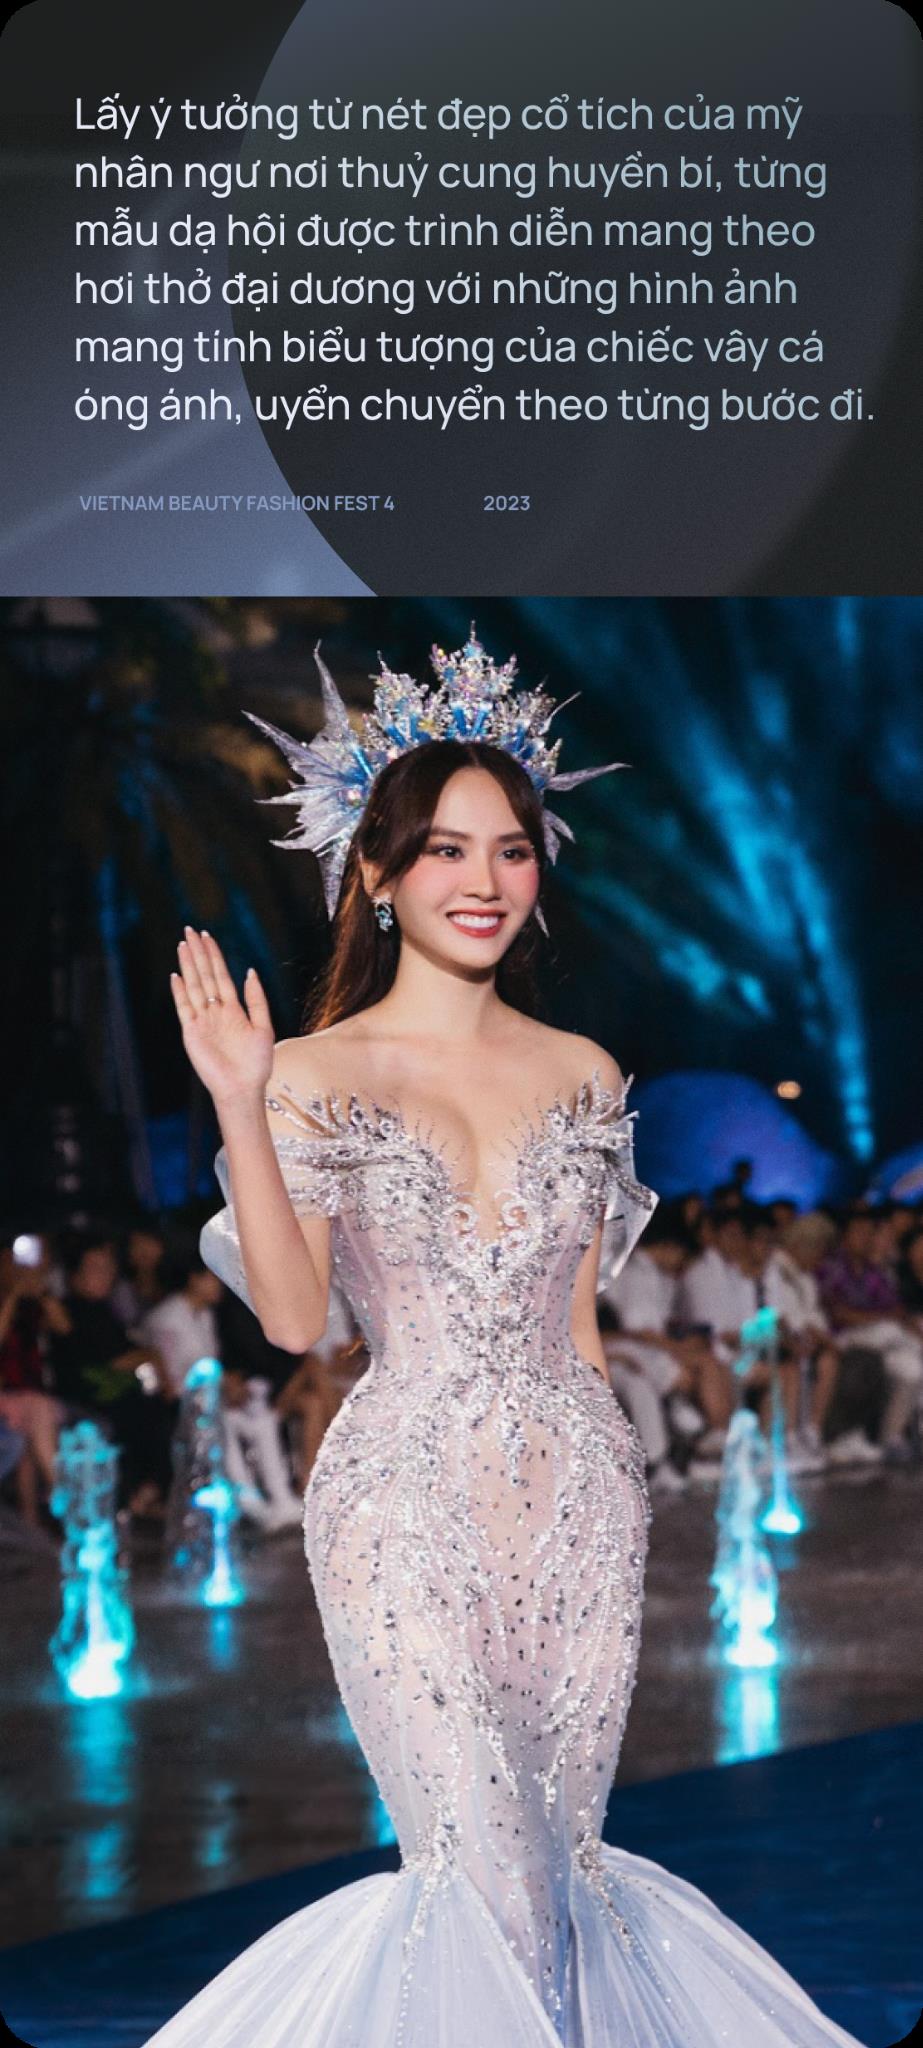 Hai đêm Vietnam Beauty Fashion Fest 4 mãn nhãn quy tụ dàn Hậu đình đám qua bàn tay dàn dựng của tổng đạo diễn Hoàng Nhật Nam - Ảnh 7.